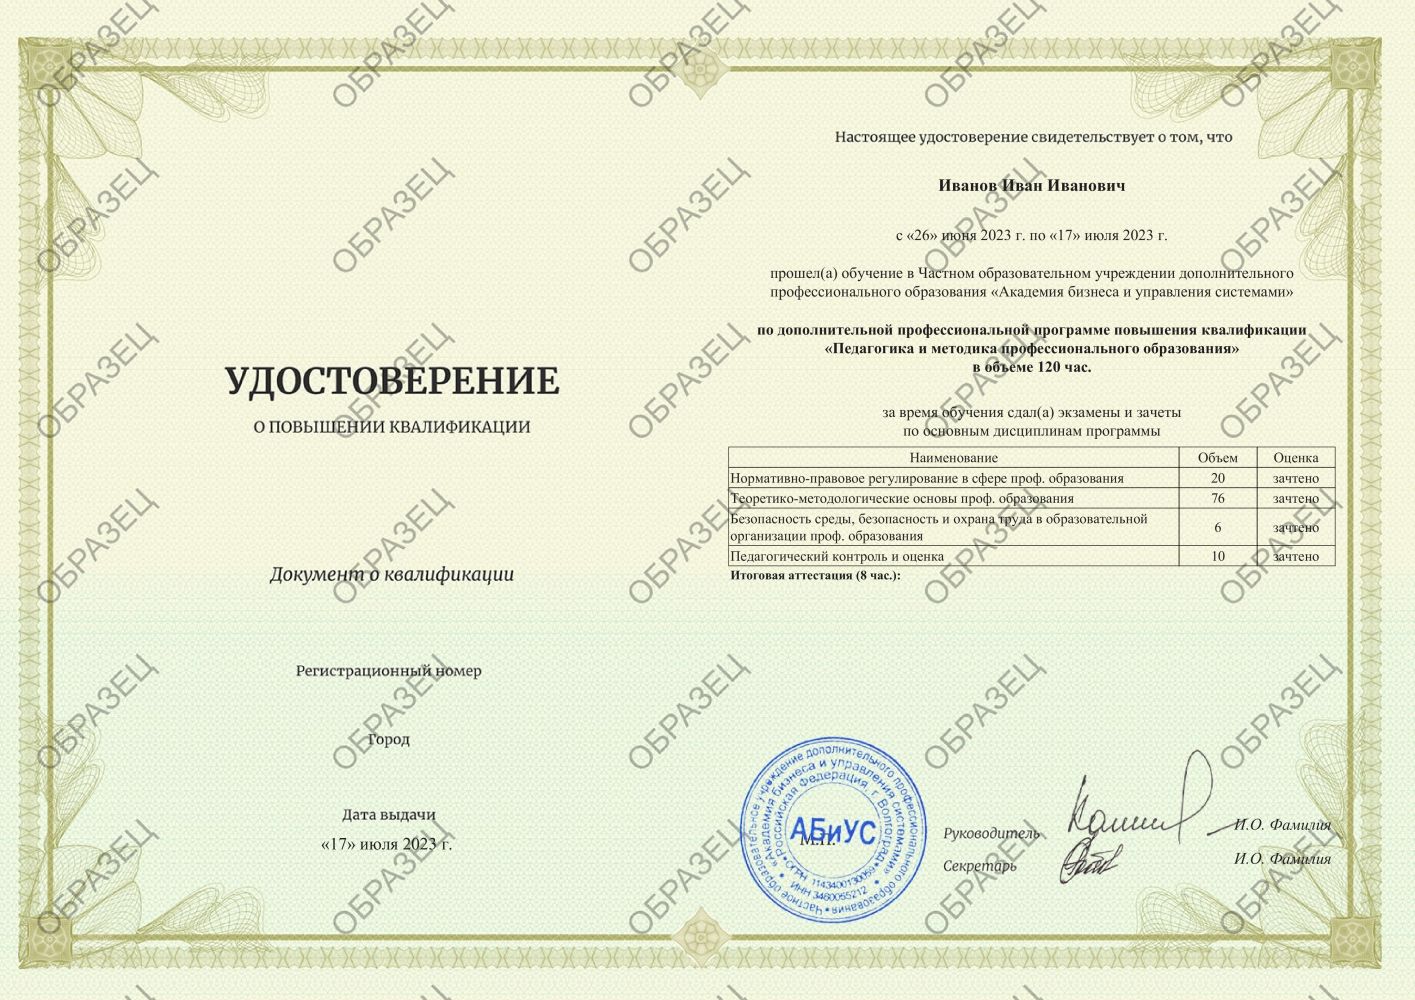 Удостоверение Педагогика и методика профессионального образования 120 часов 4125 руб.